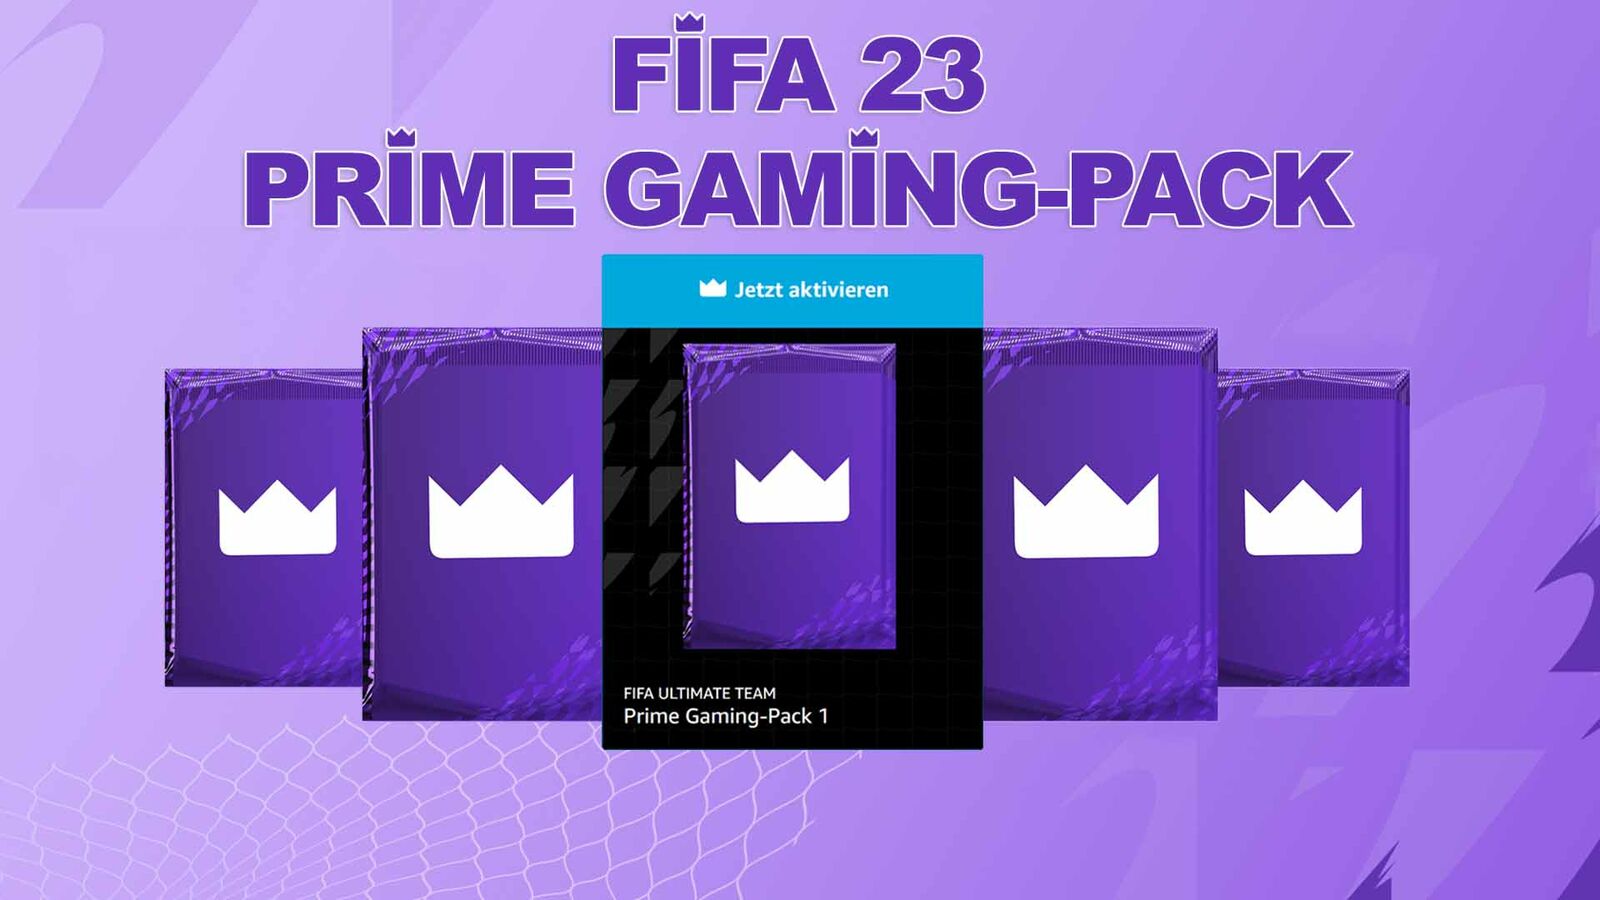 Gaming] - Loot FIFA 23 UT para usuários Prime